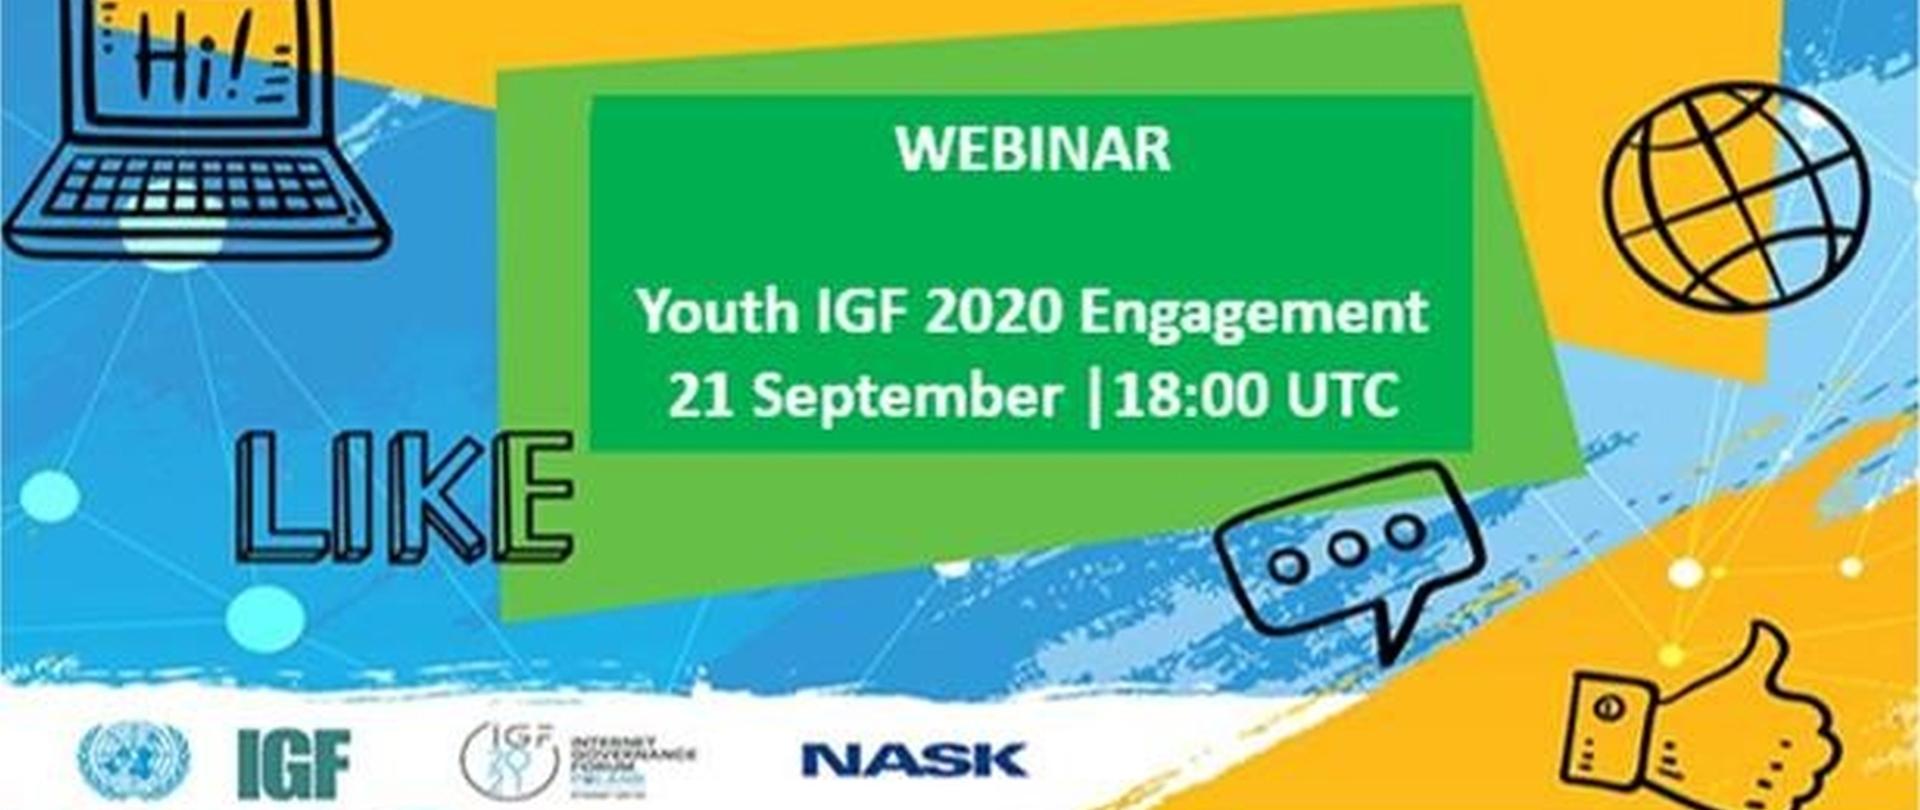 Grafika przedstawia kompilacje rysunków komputera, globu, kciuka z napisem "Webinar Youth IGF 2020 Engagement 21 september"